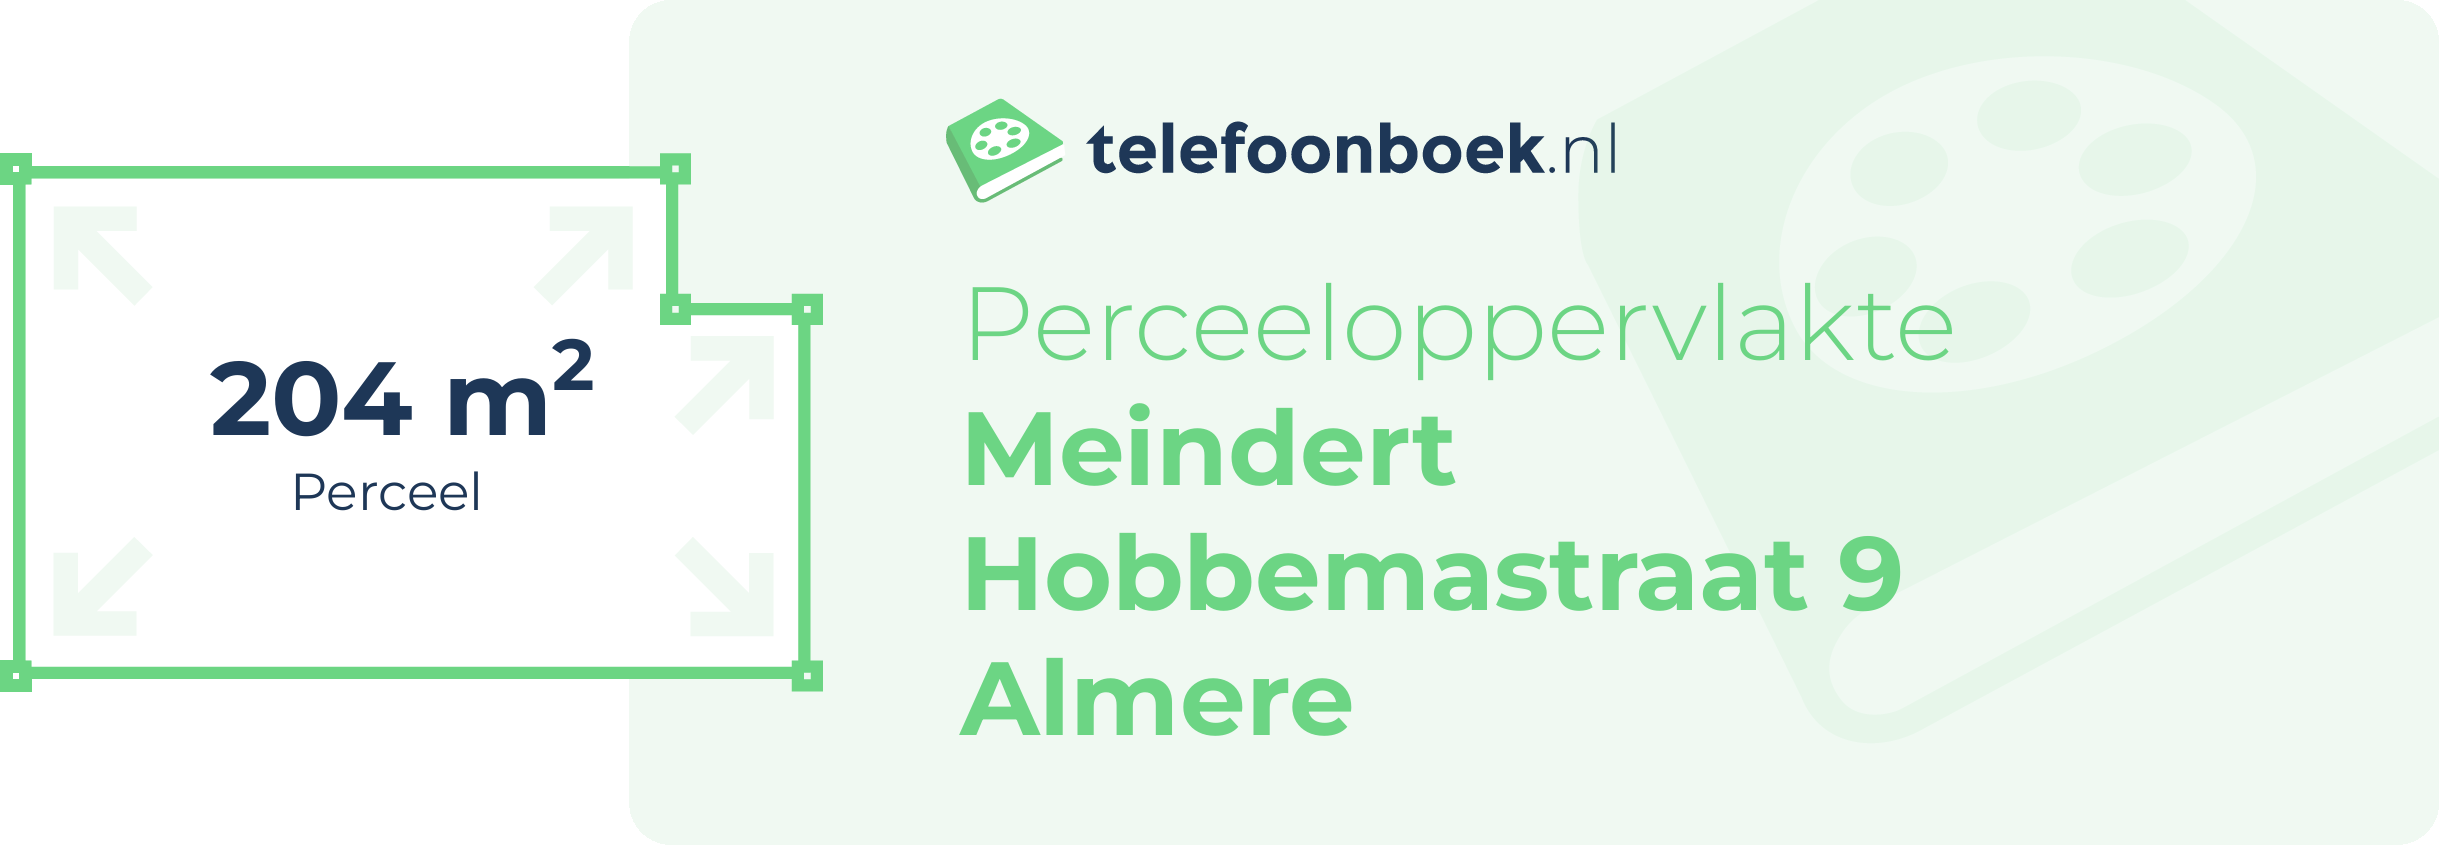 Perceeloppervlakte Meindert Hobbemastraat 9 Almere